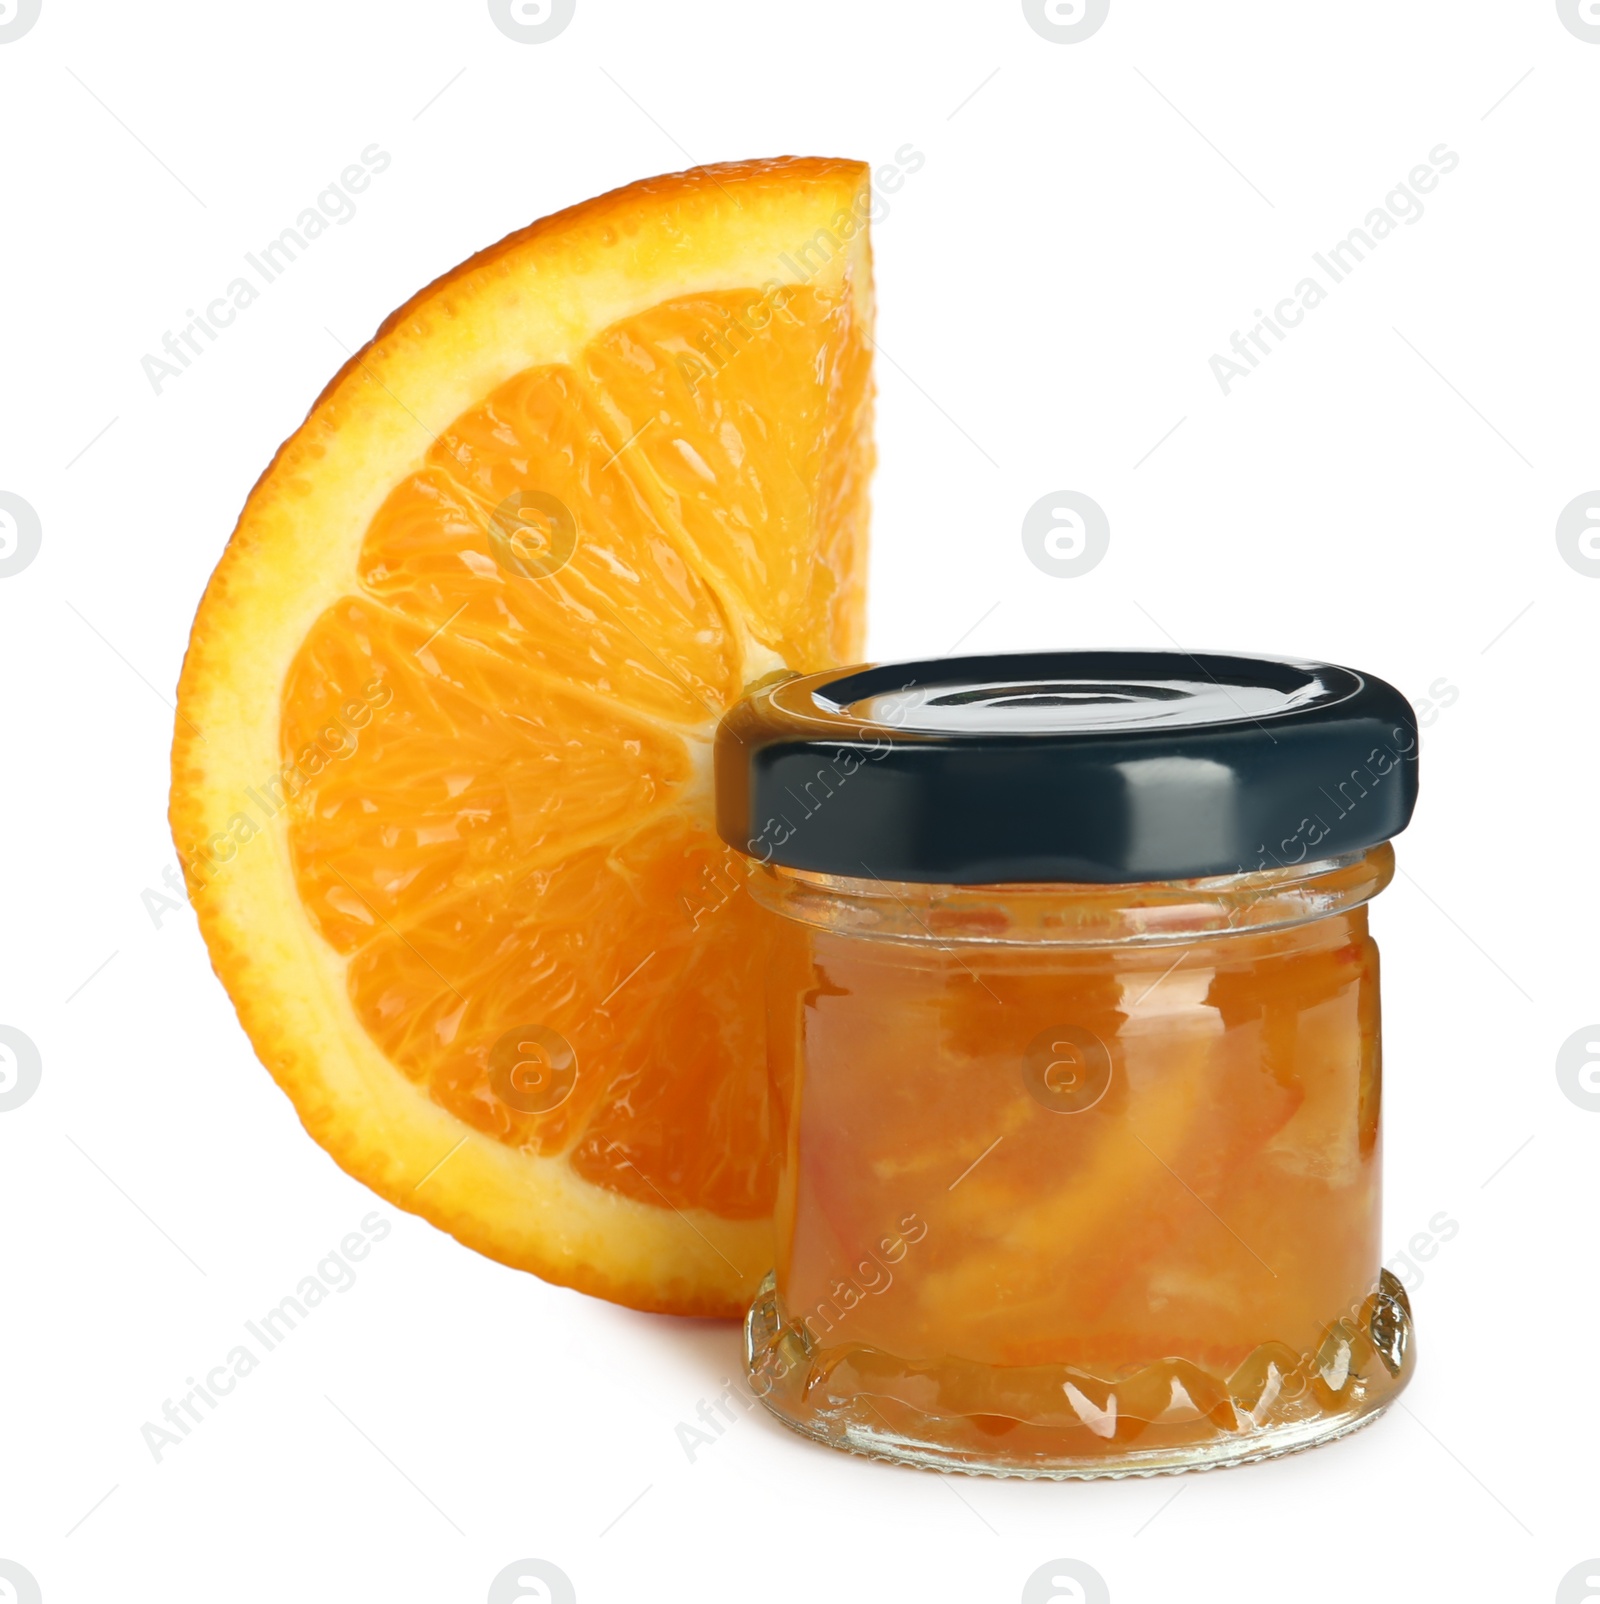 Photo of Jar with orange jam and fresh fruit on white background